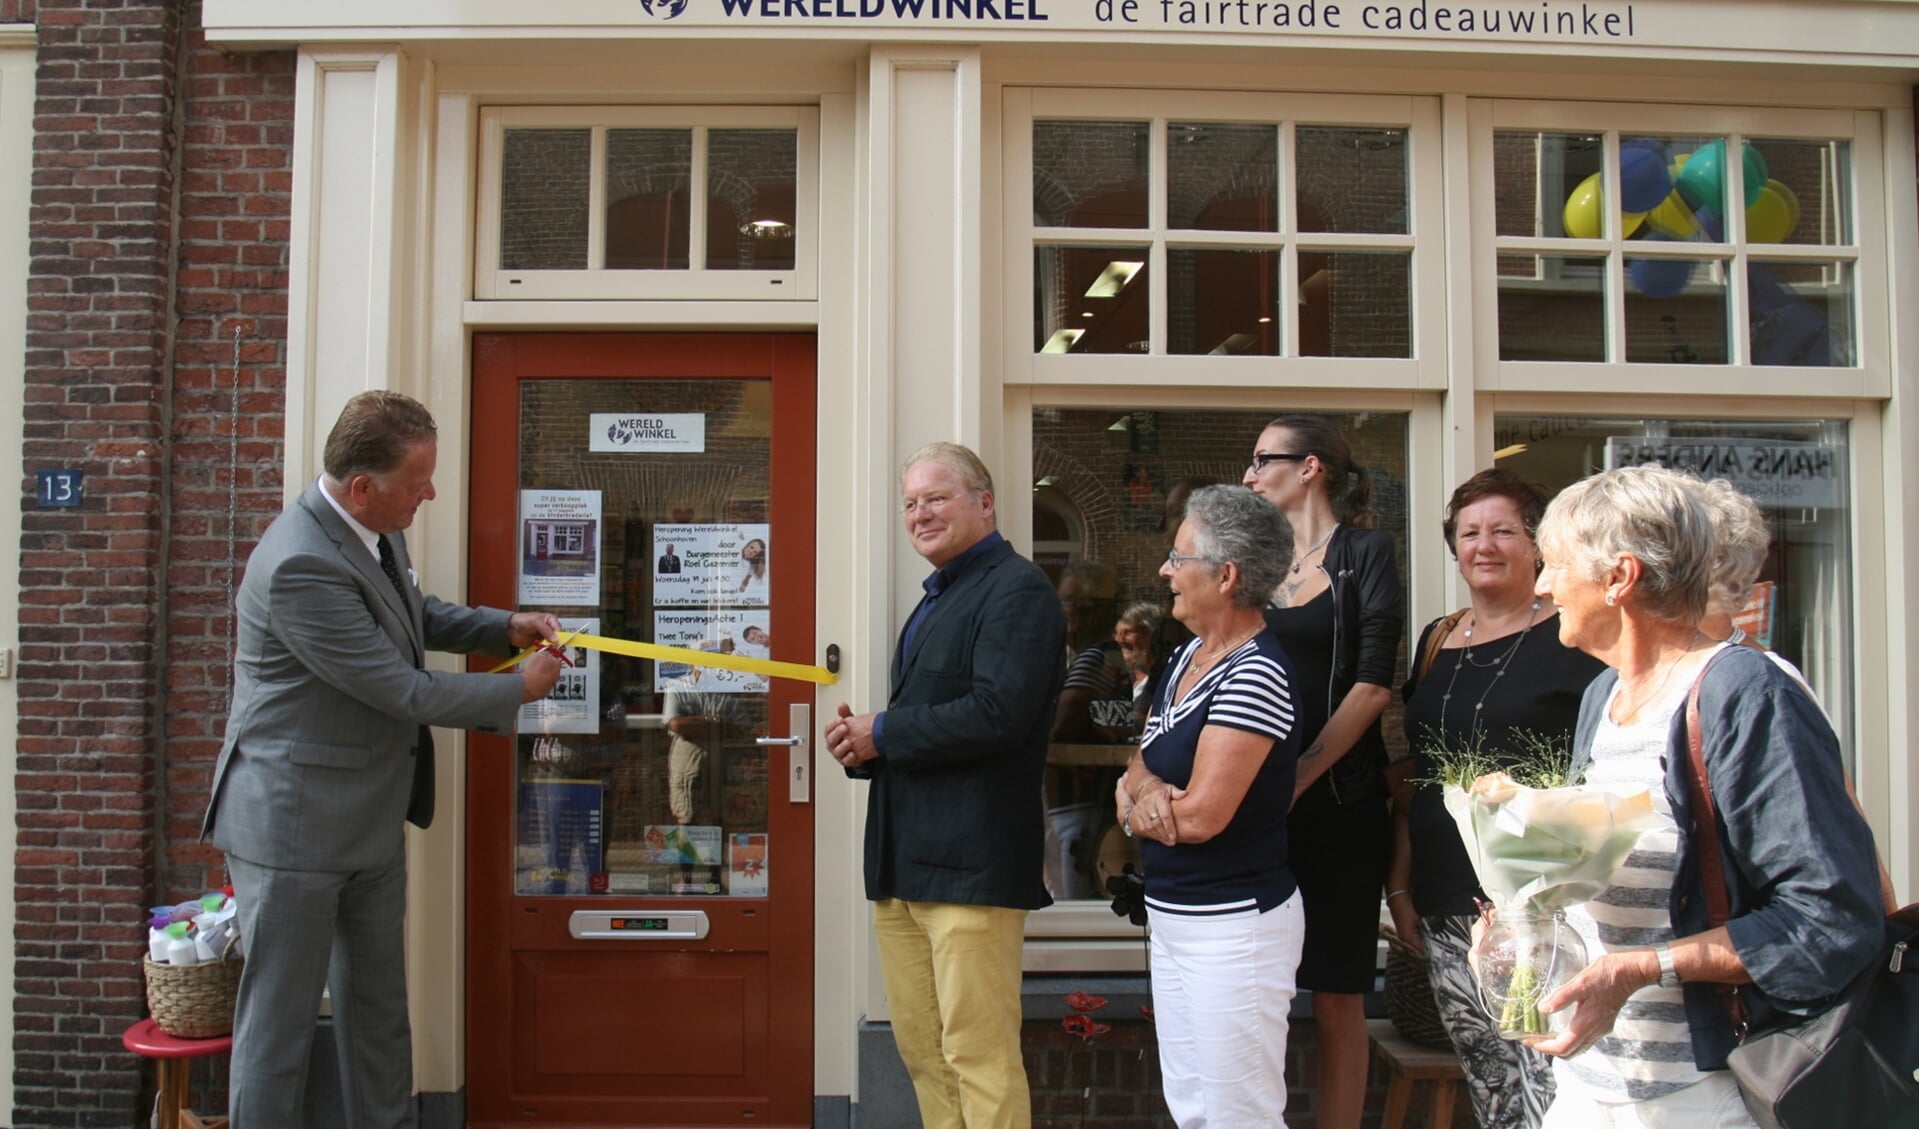 • Burgemeester Cazemier heropent de Wereldwinkel in Schoonhoven.